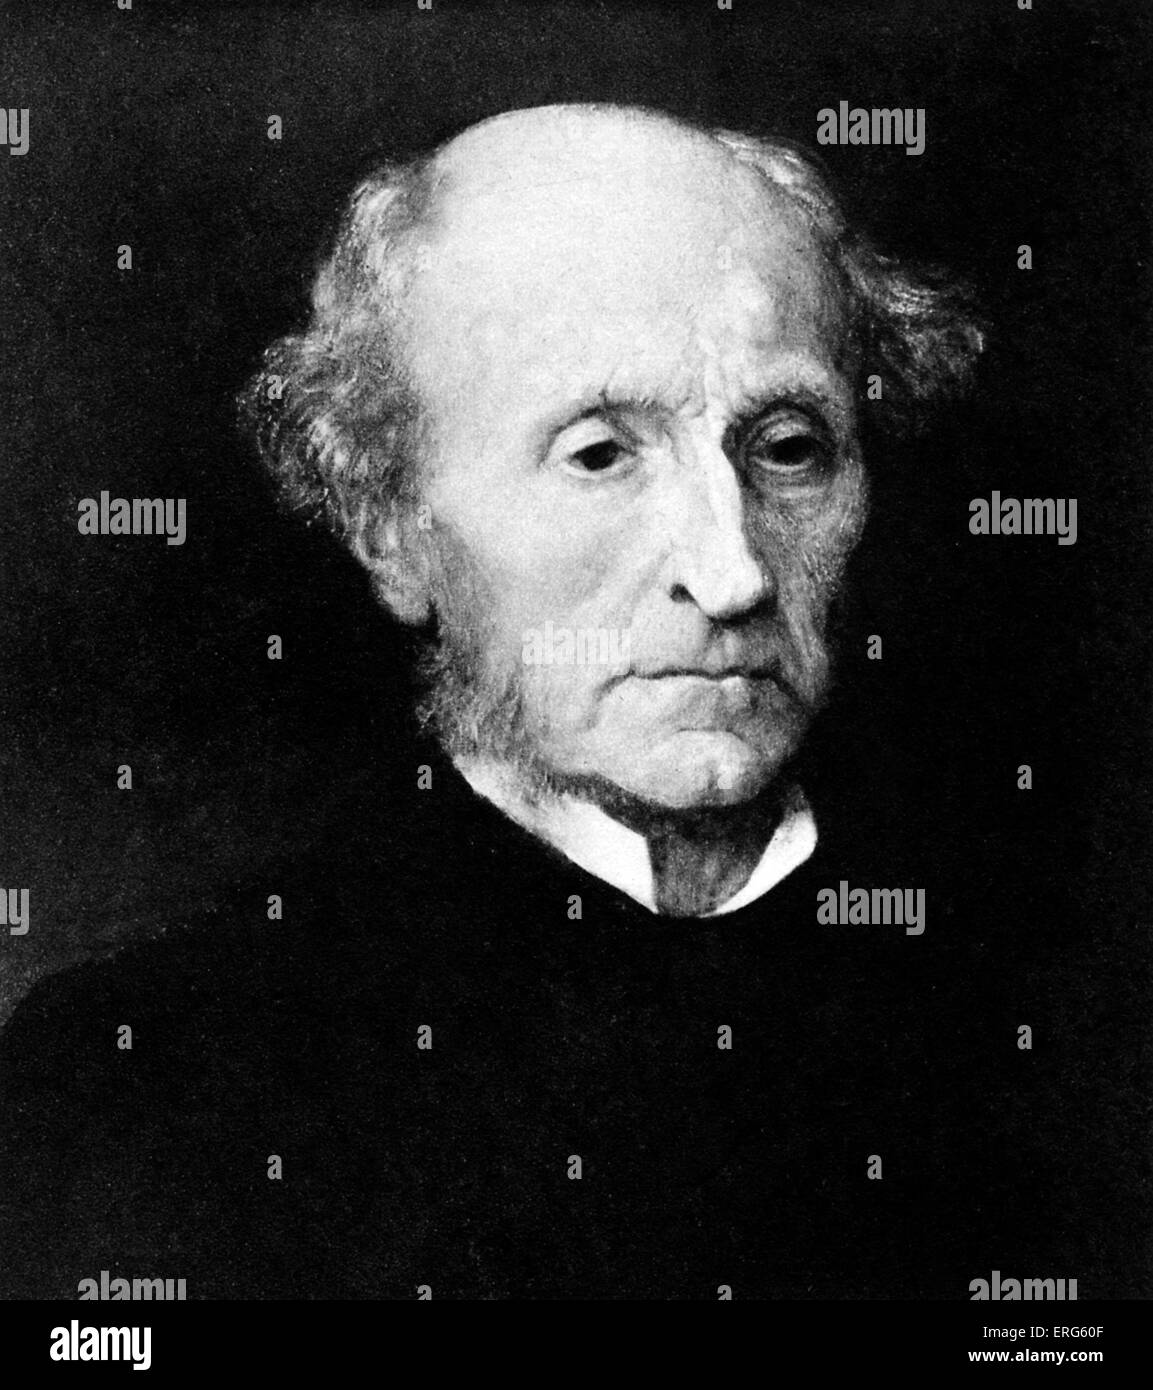 John Stuart Mill, portrait. Oil painting by G F Watts, 1874. JSM: